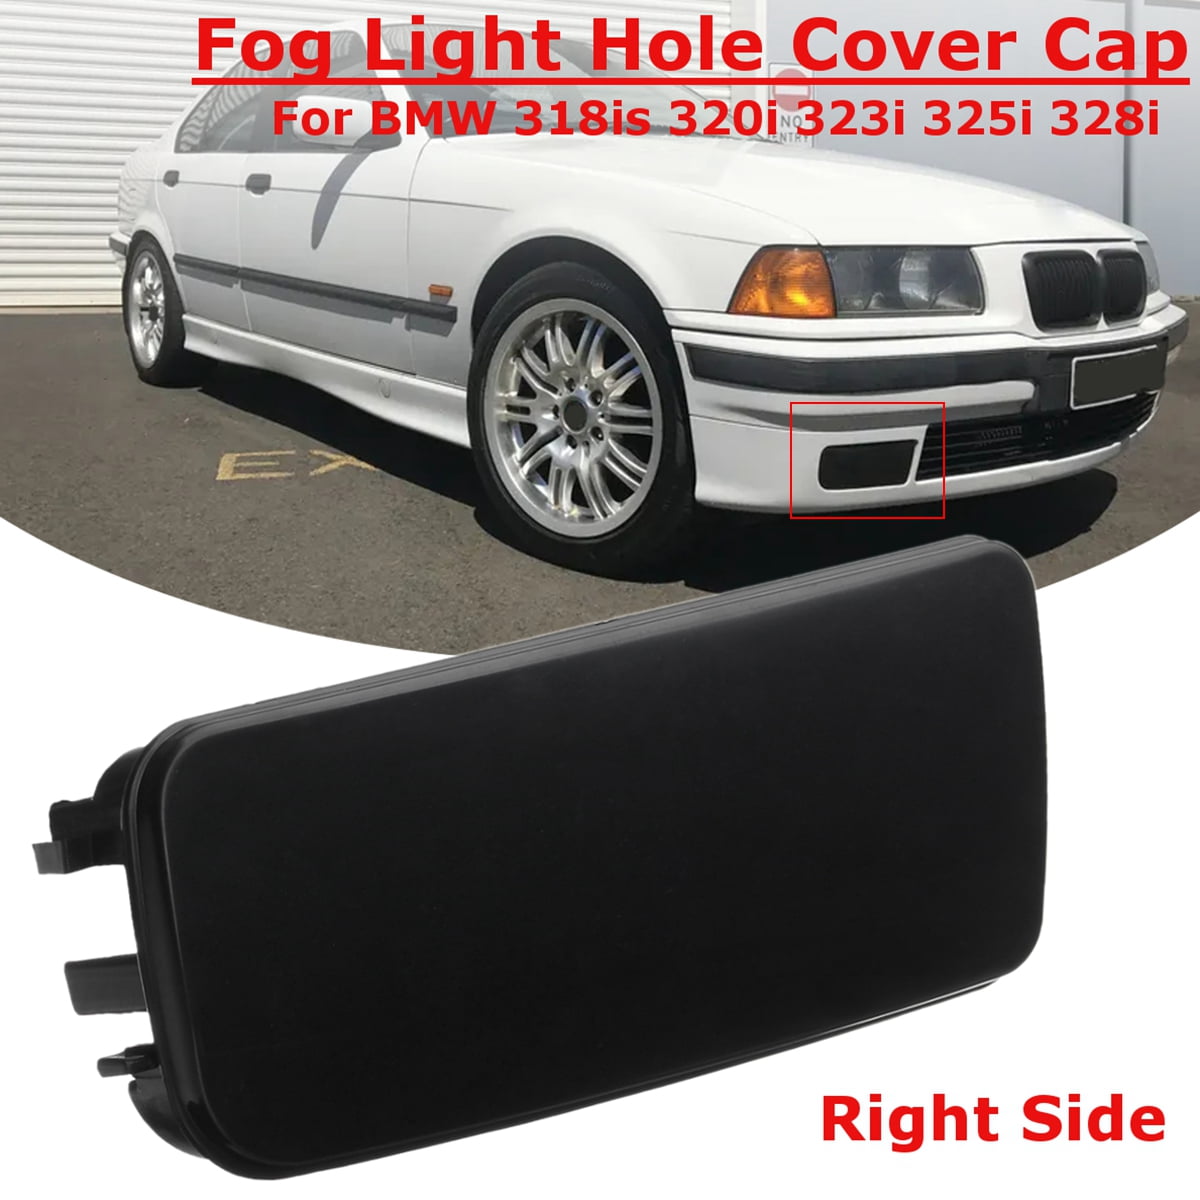 1 Pair Black Fog Light Hole Cover Cap For BMW 3-Series E36 318is 320i 323i 325i